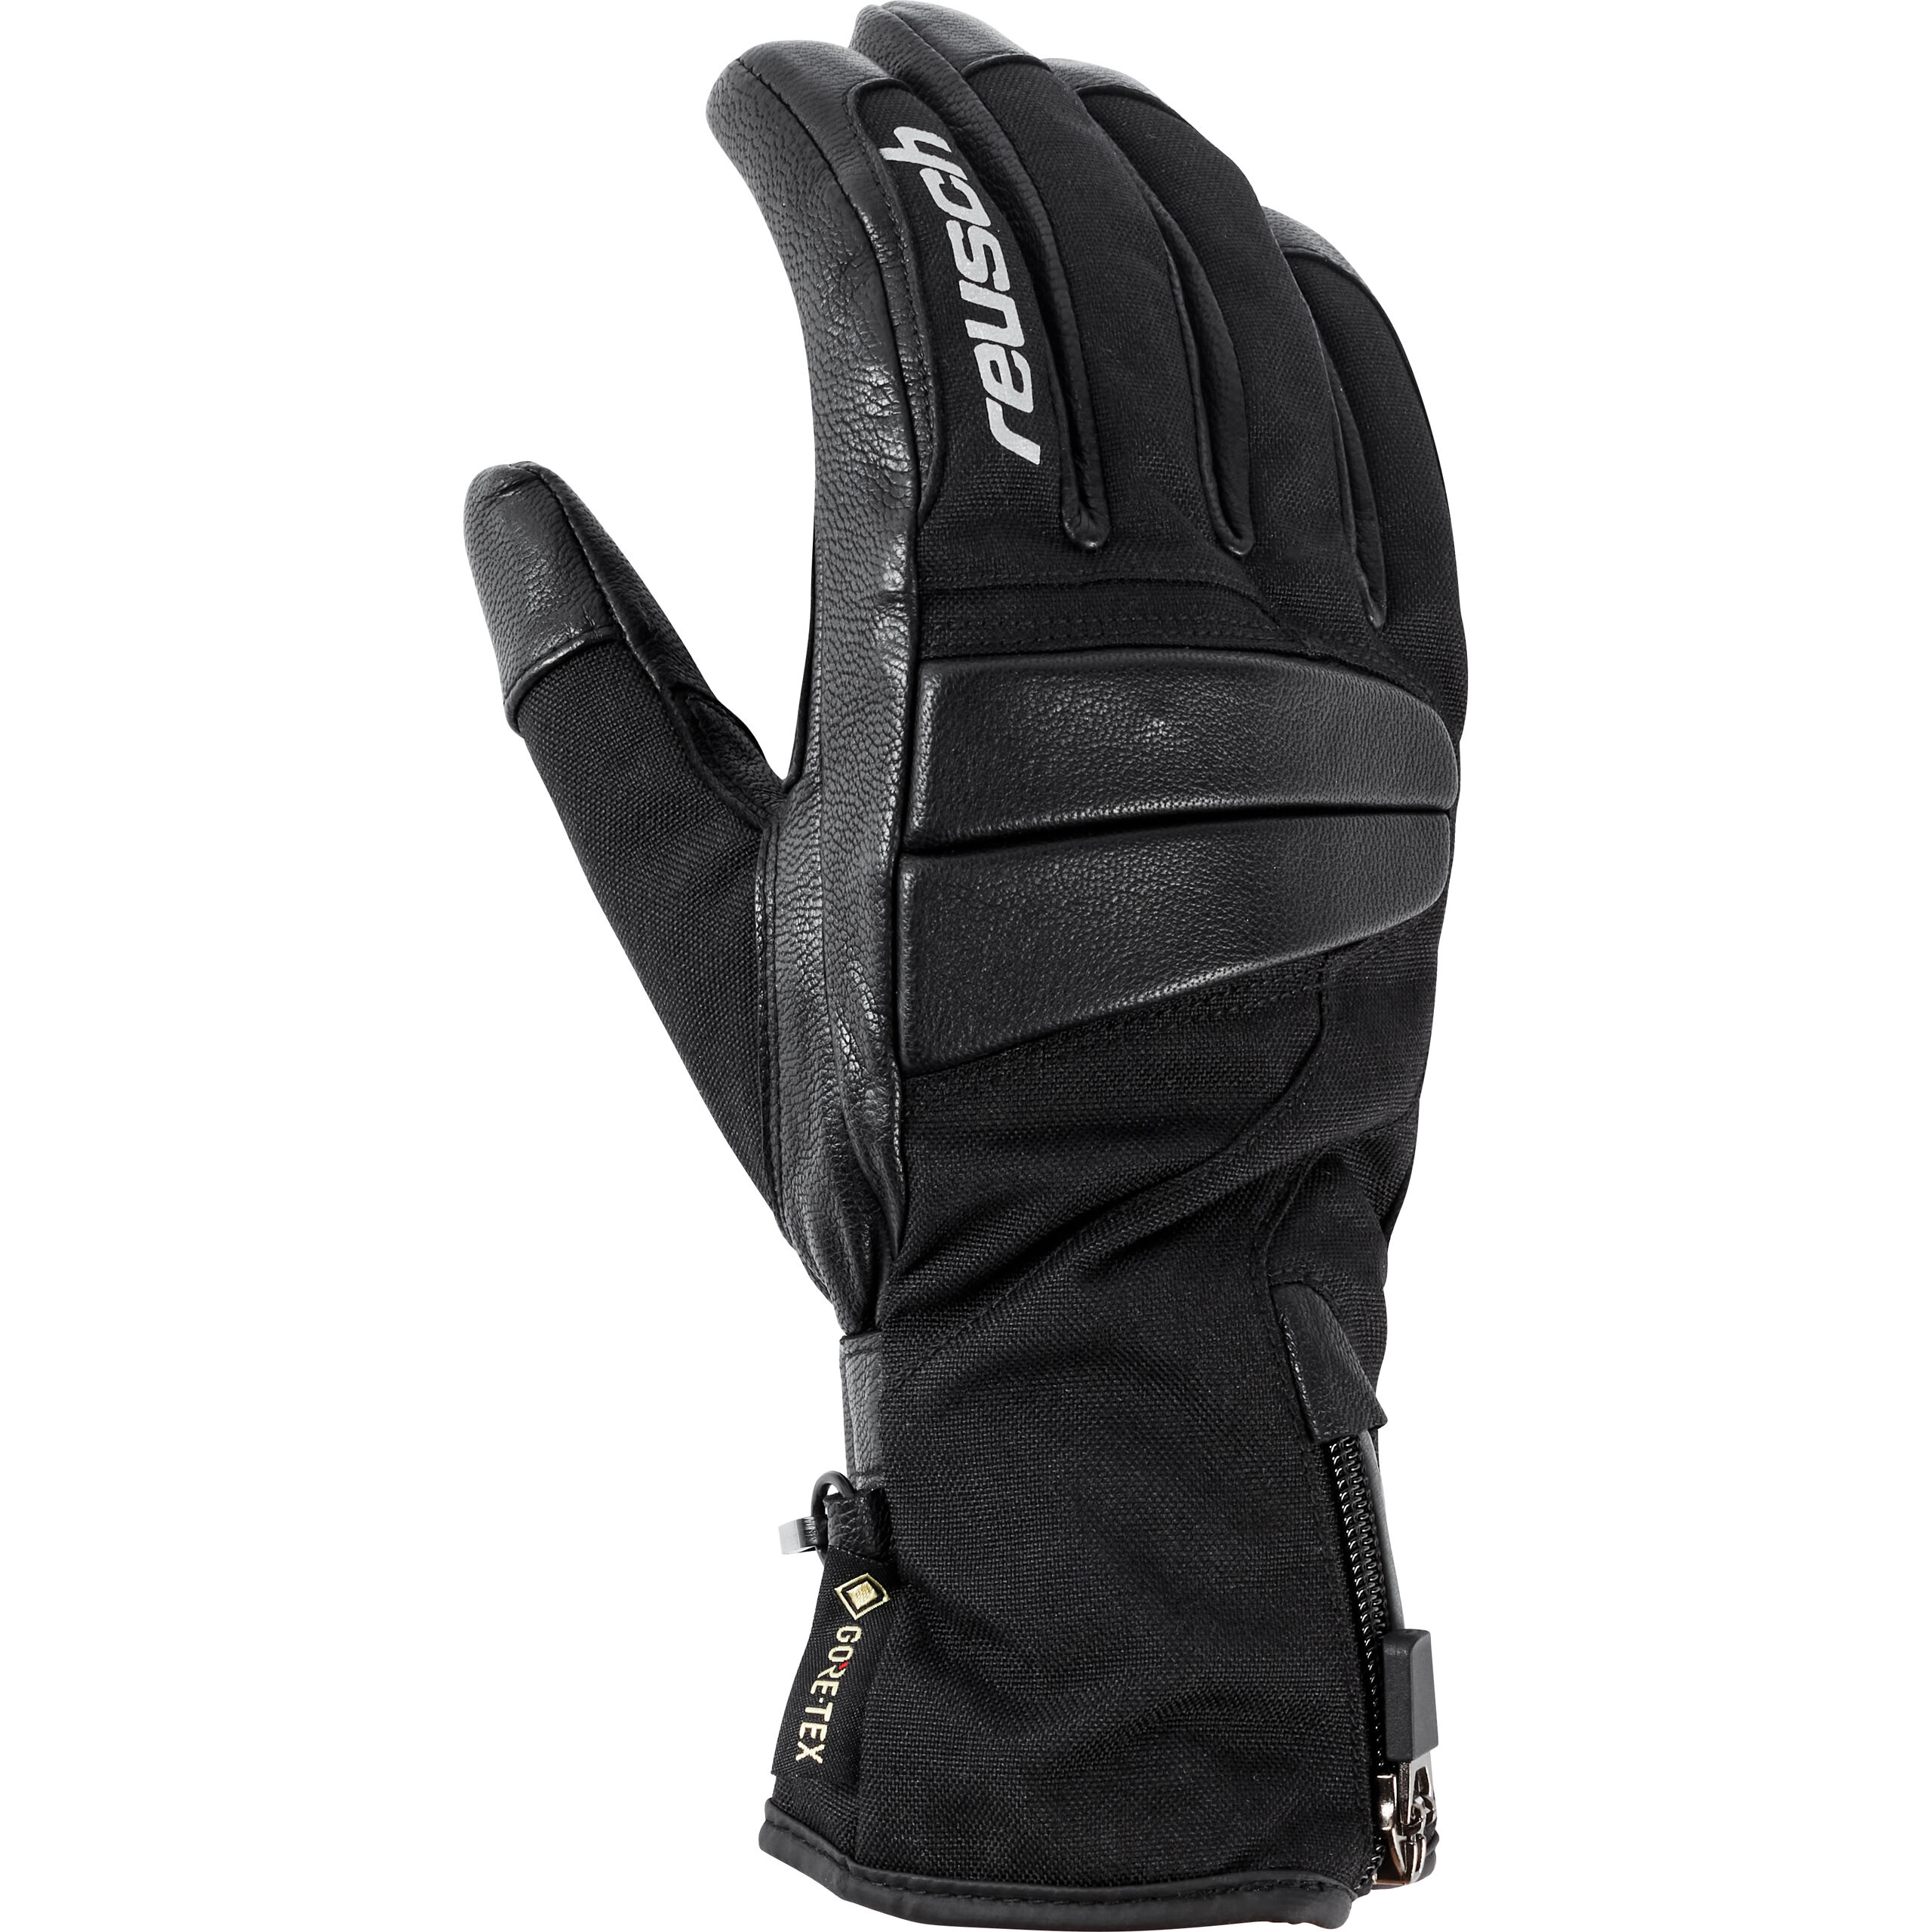 Accessoires Handschuhe Fingerhandschuhe 6,5 Polo Road Polo-Tex Mottorad Handschuhe schwarz Gr 